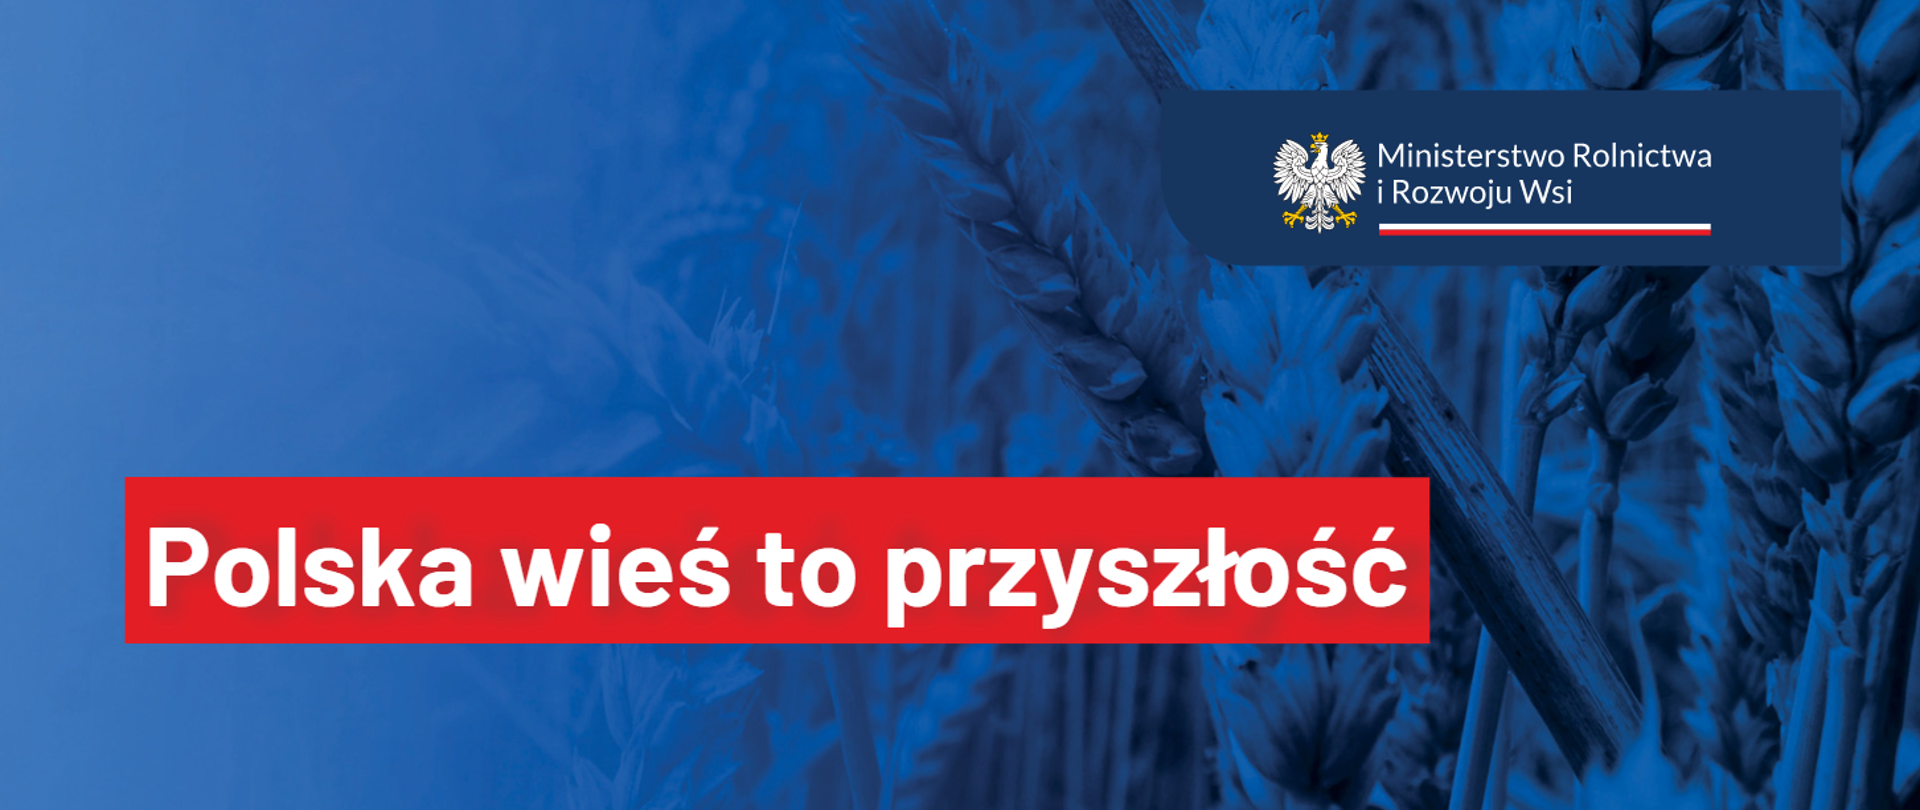 Niebieska grafika z logiem Ministerstwa Rolnictwa i Rozwoju Wsi oraz napisem "Polska wieś to przyszłość"